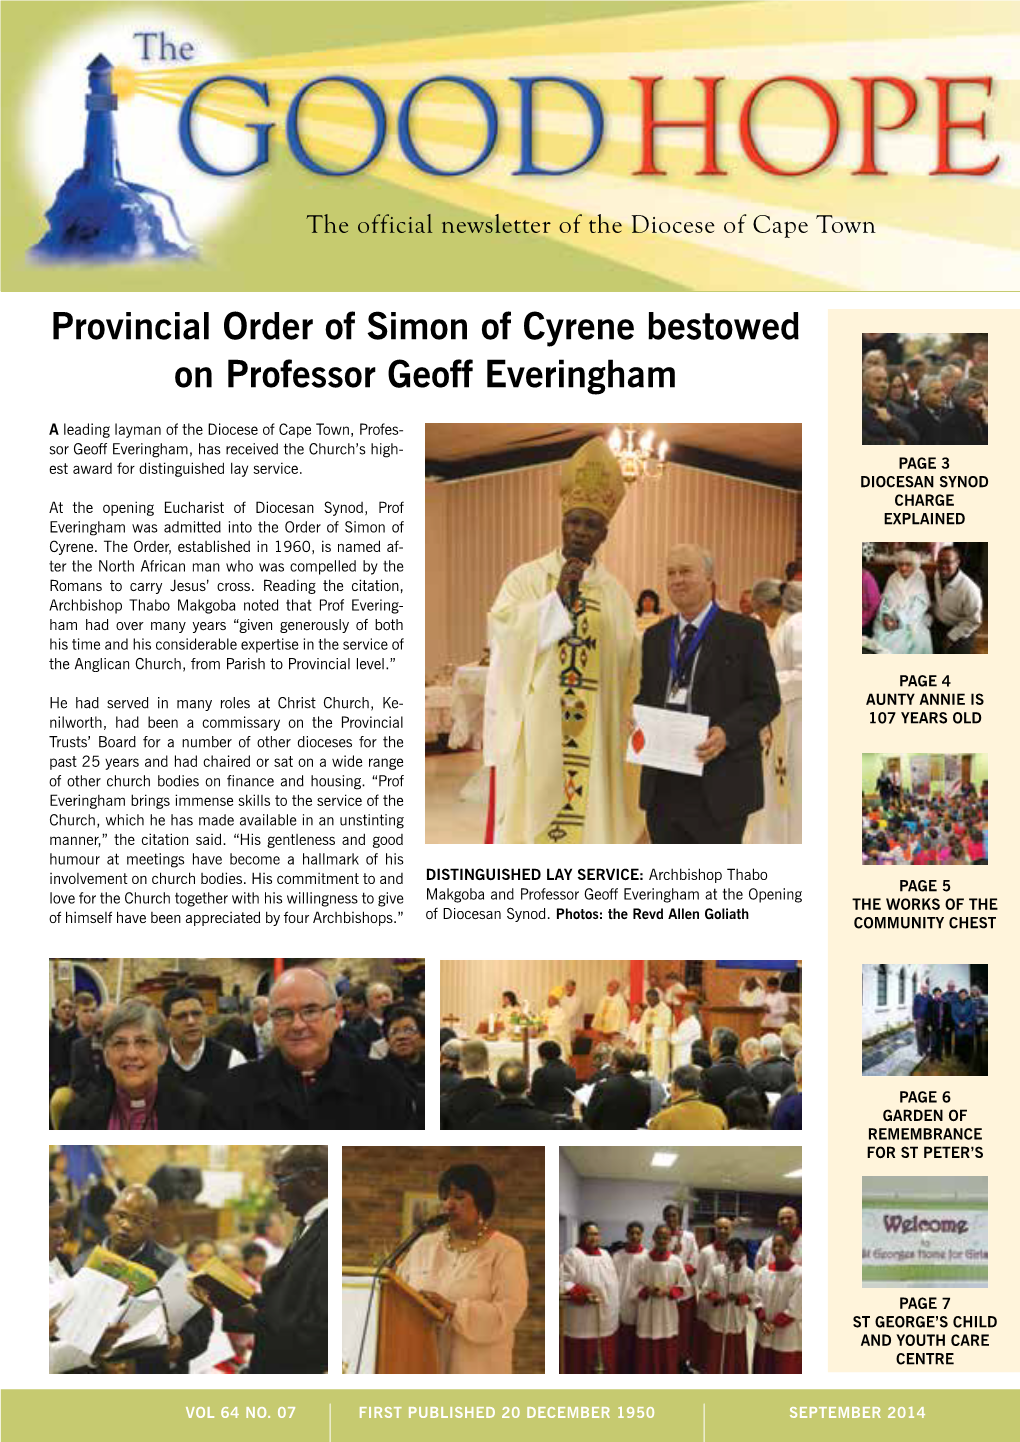 Provincial Order of Simon of Cyrene Bestowed on Professor Geoff Everingham